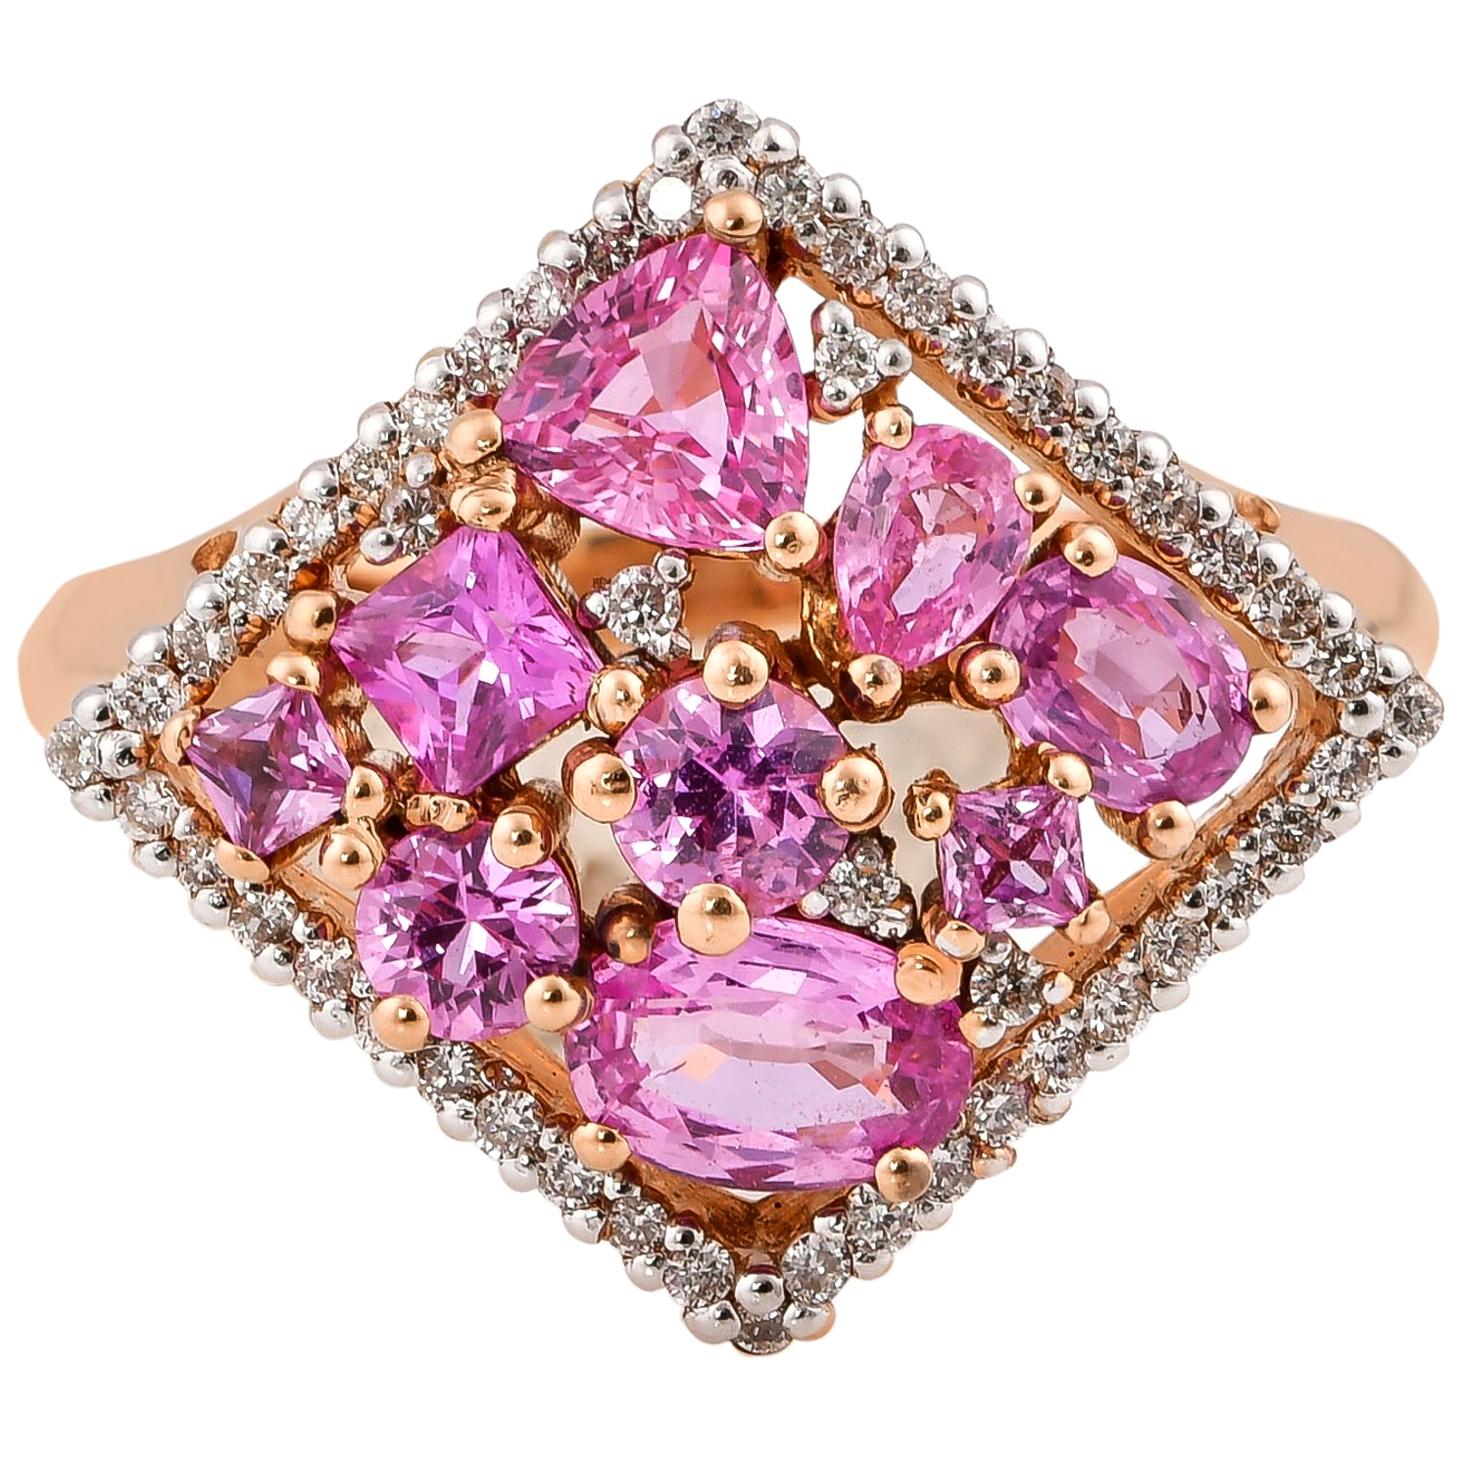 1.96 Carat Pink Sapphire Ring in 18 Karat Rose Gold with Diamonds